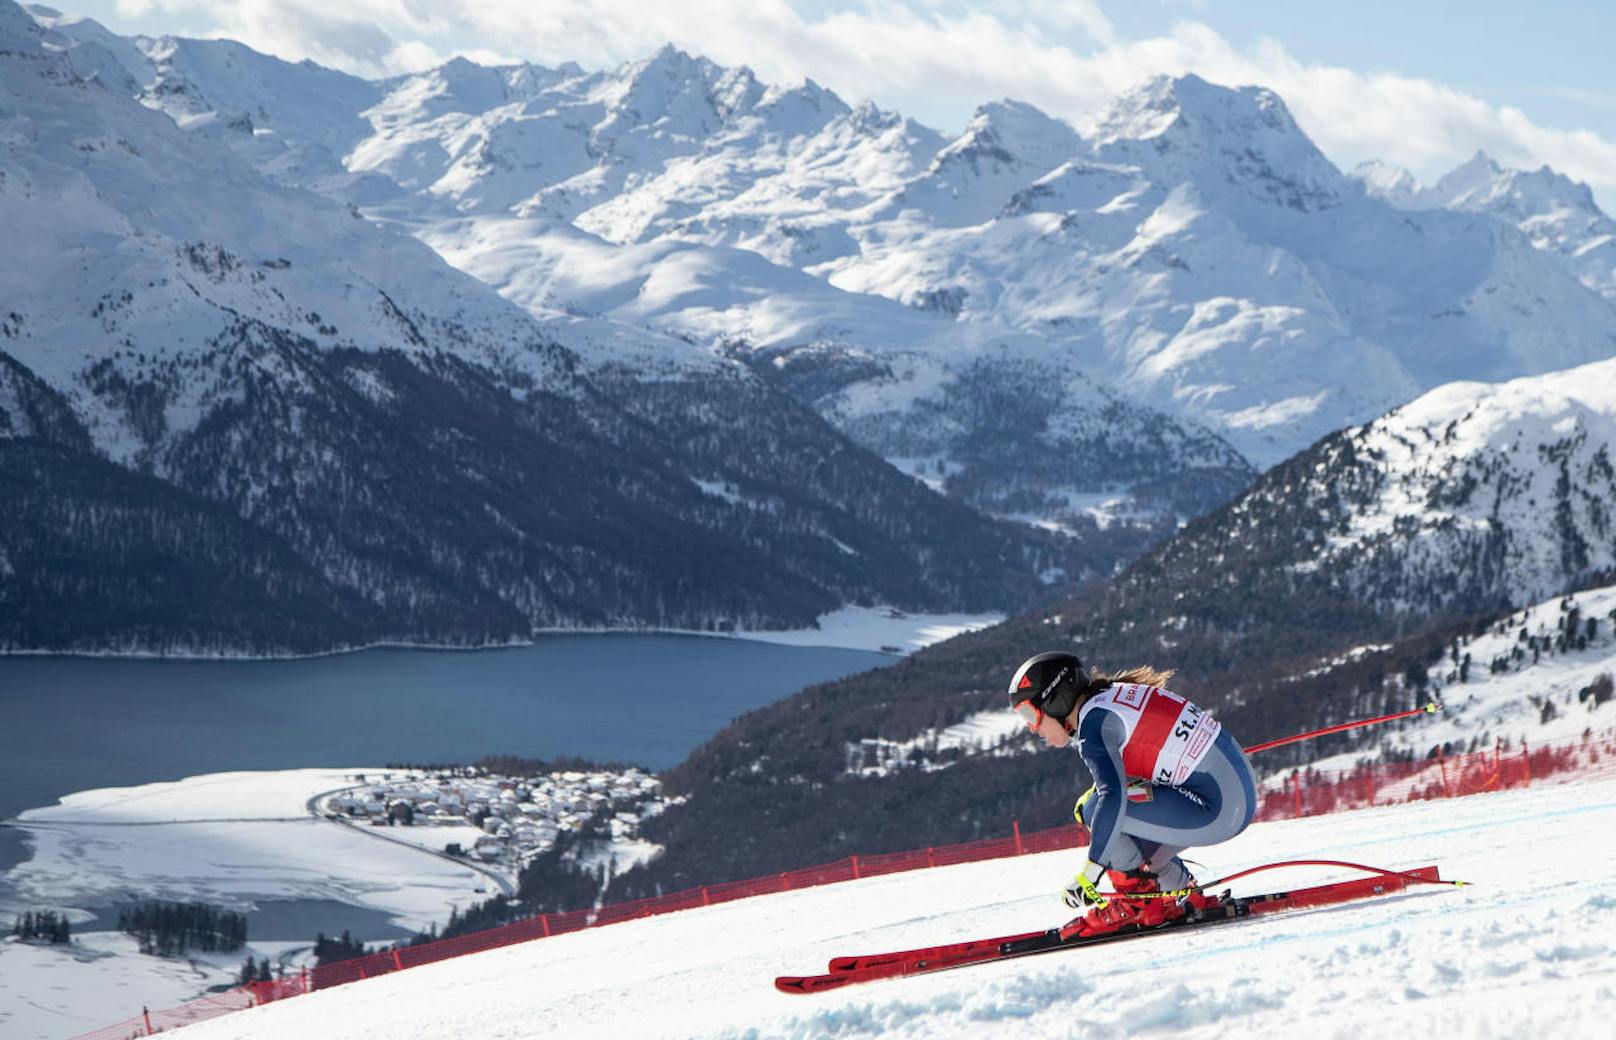 Sofia Goggia gewinnt den Super-G in St. Moritz. Das Rennen ist ein Krimi. Goggia siegt nur ein Hundertstel vor Landsfrau Federica Brignone. Die beste Österreicherin Nicole Schmidhofer verpasst als Vierte das Podest knapp hinter Mikaela Shiffrin.